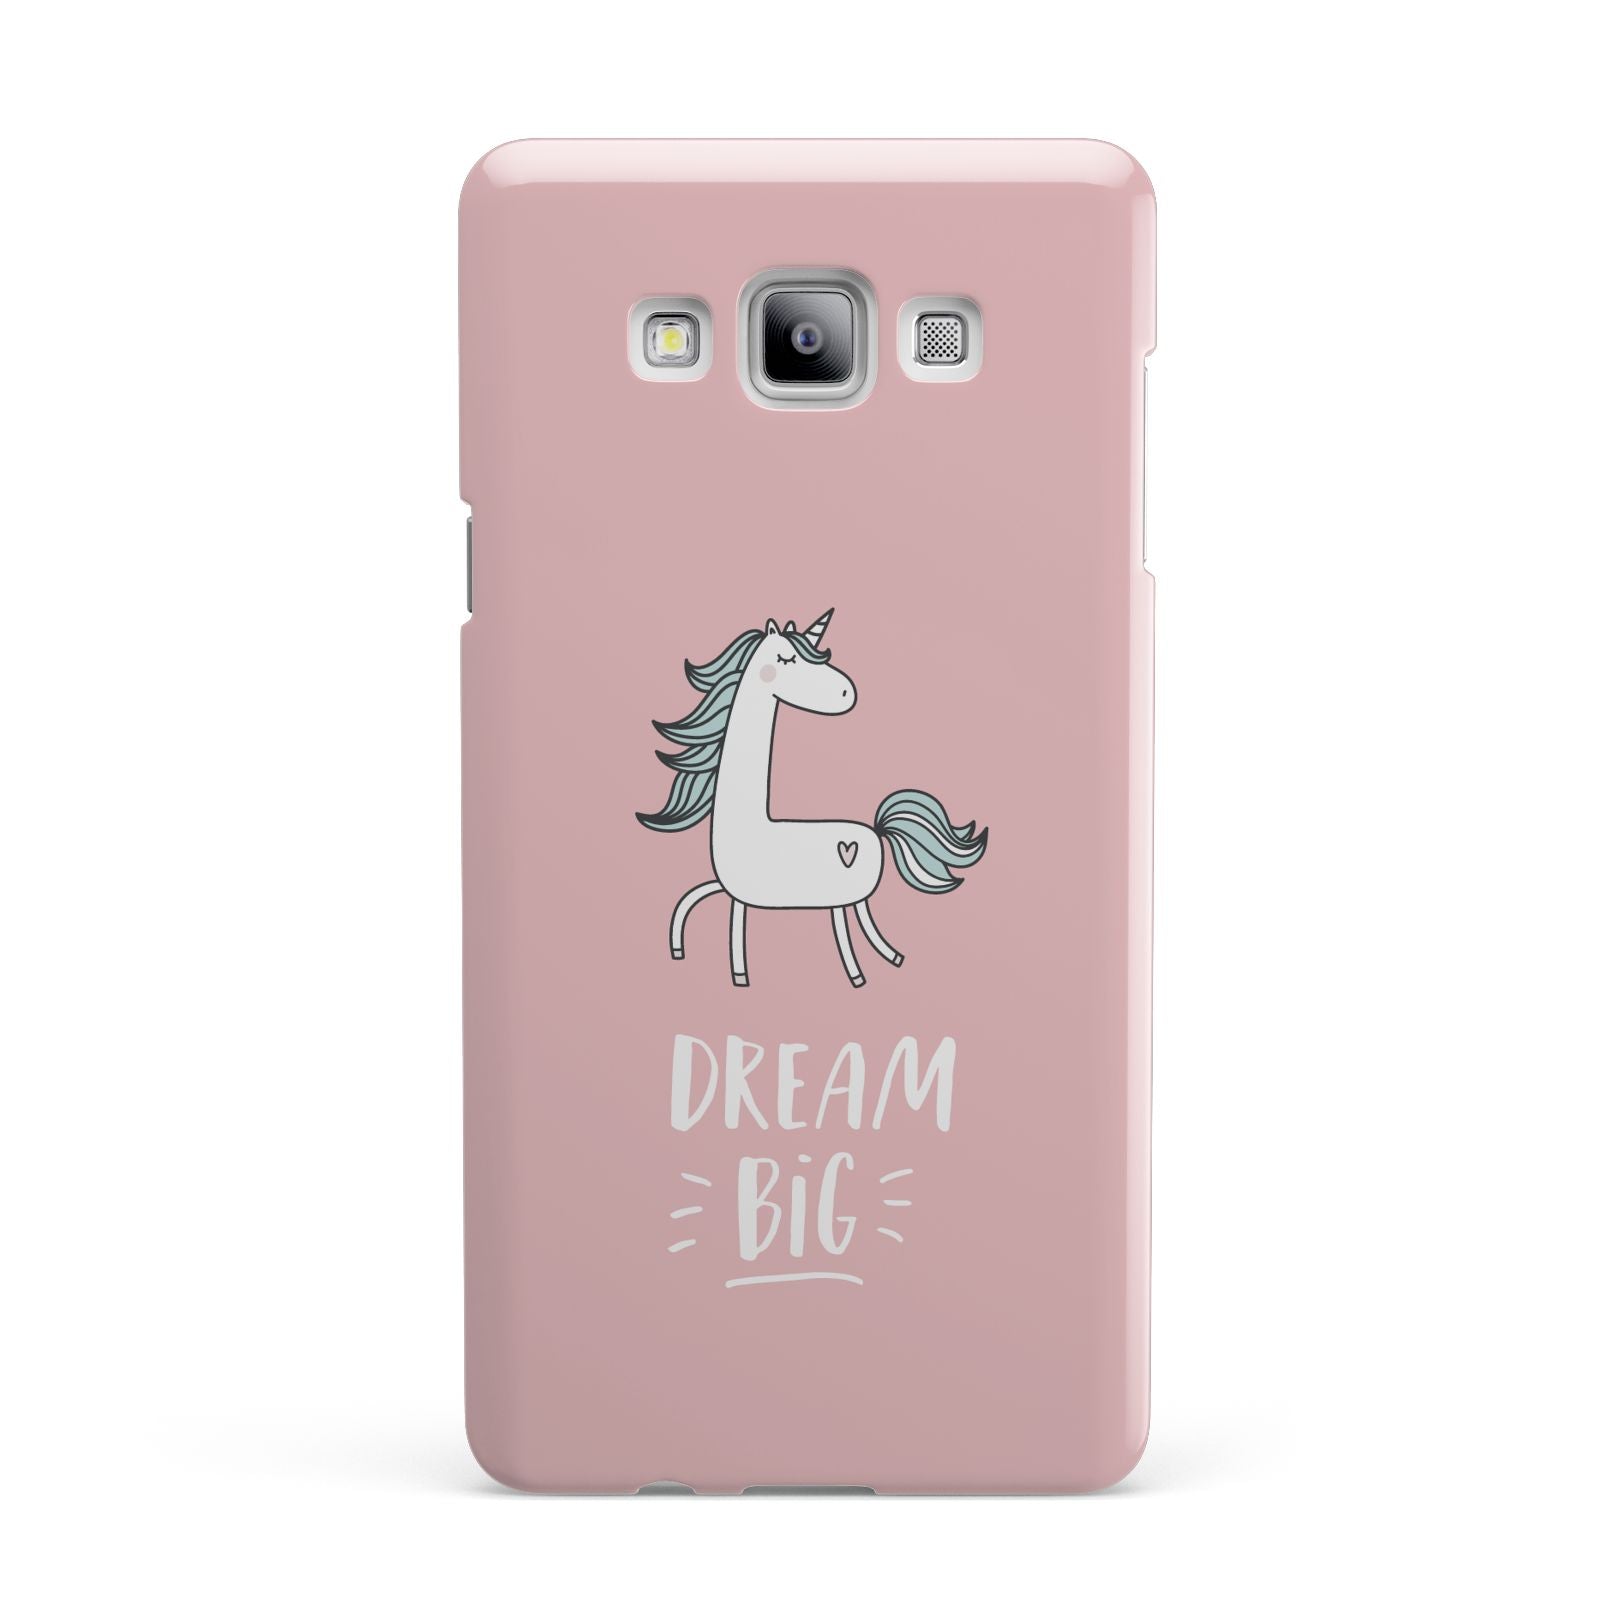 Unicorn Print Dream Big Samsung Galaxy A7 2015 Case